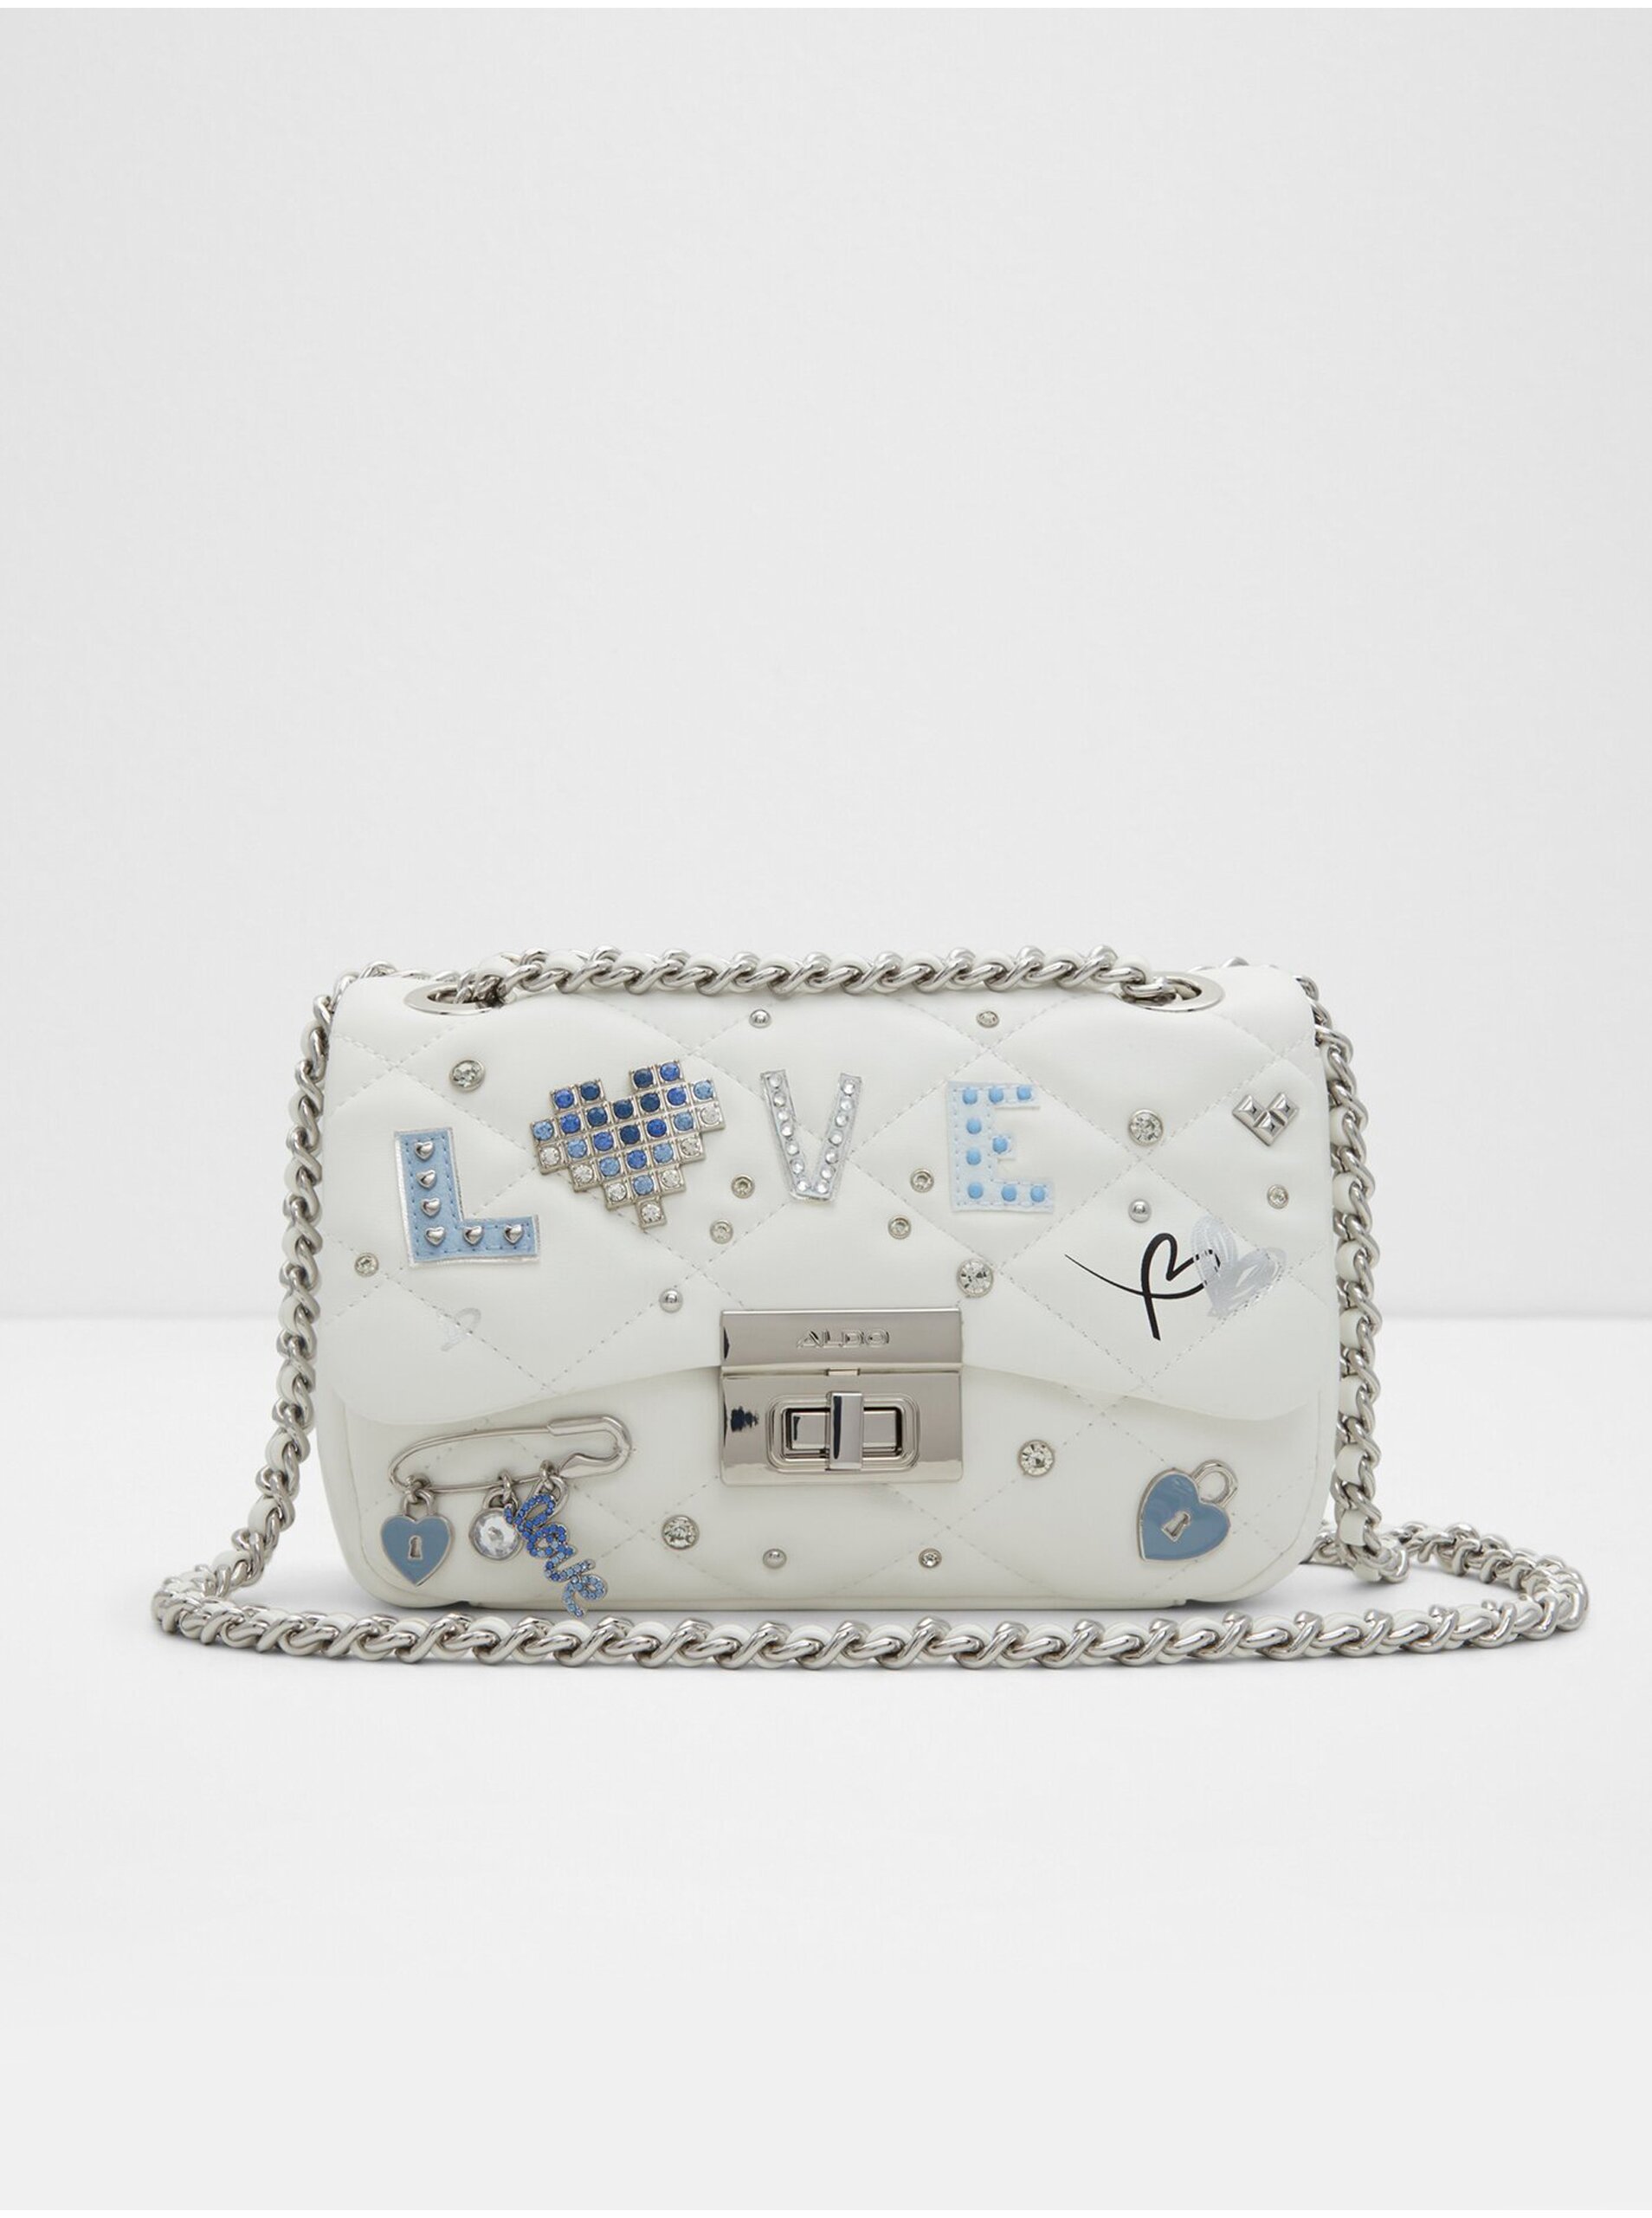 E-shop Bílá dámská crossbody kabelka s ozdobnými detaily ALDO Digilovebag